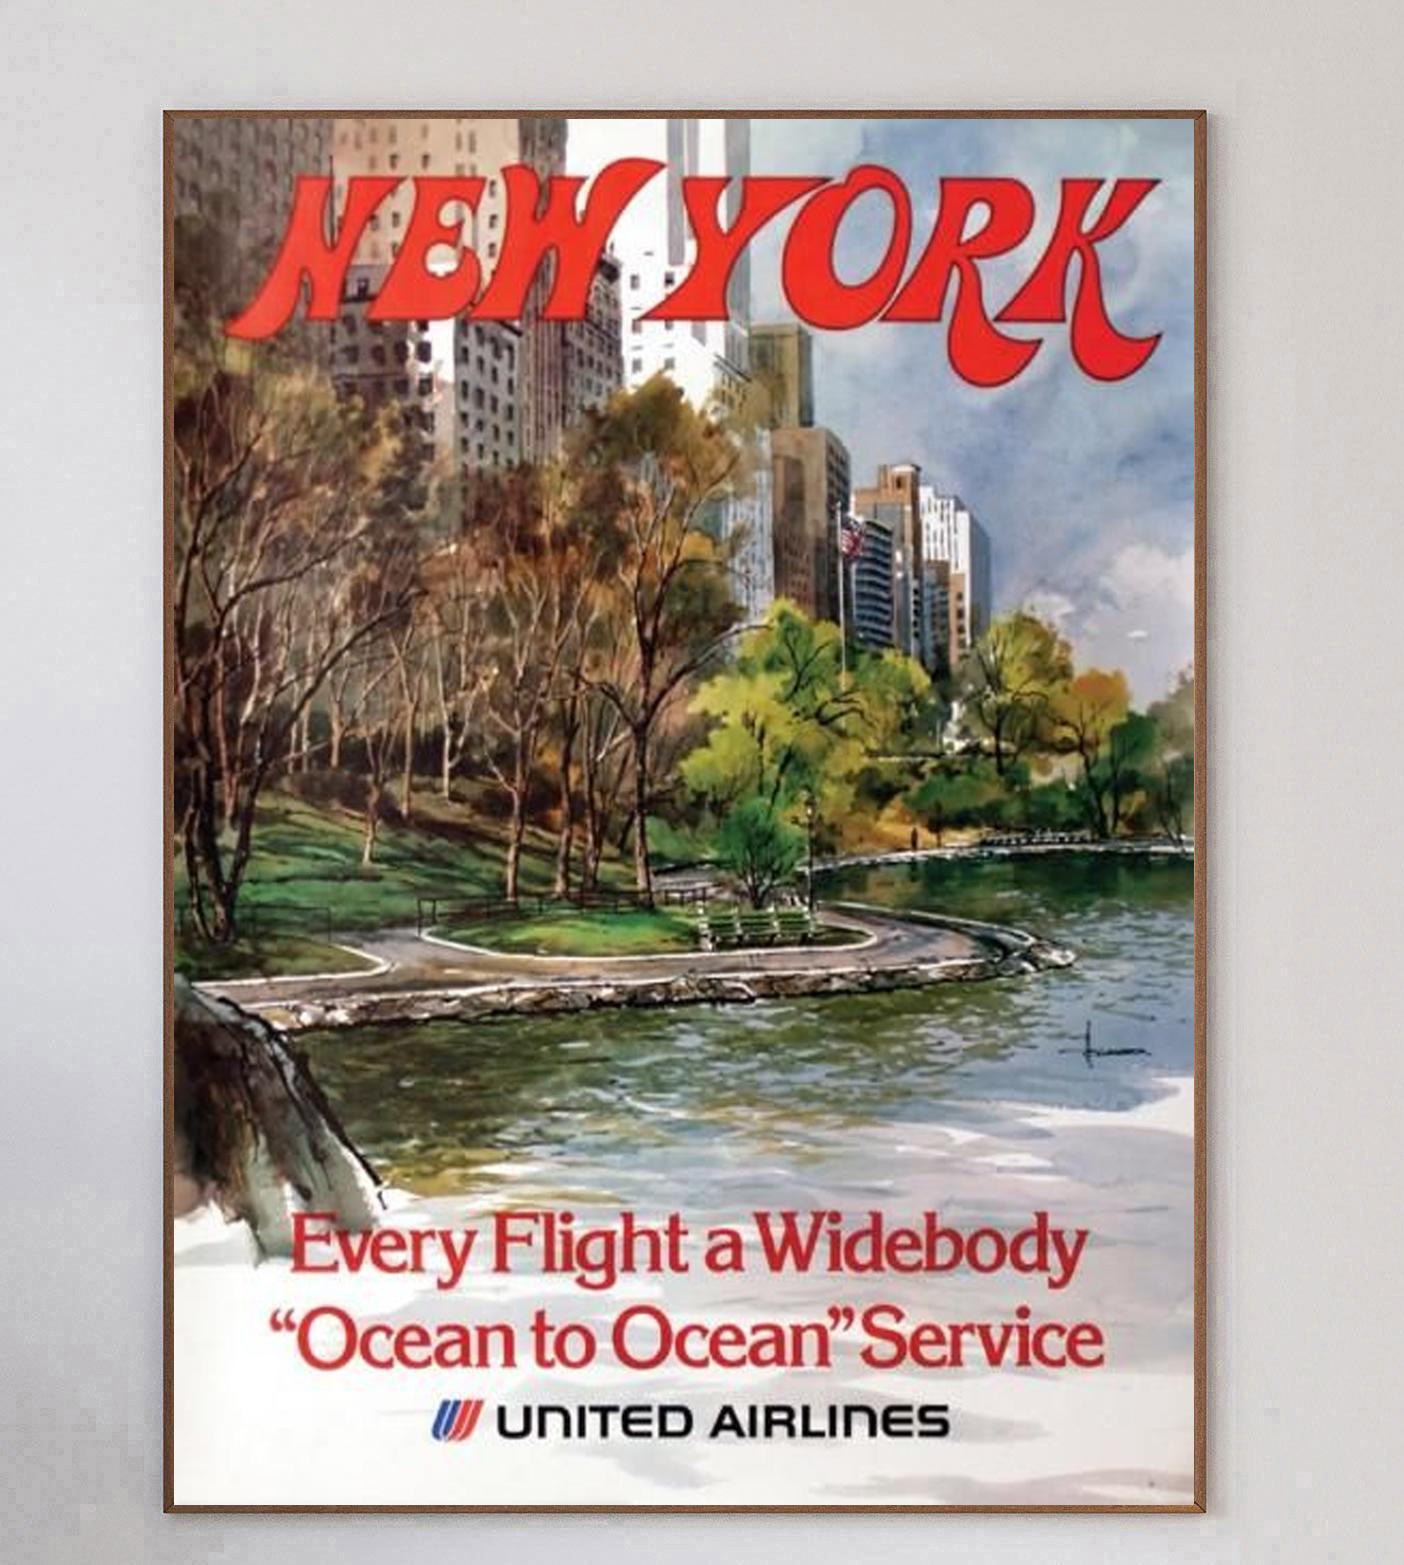 Dieses schöne und seltene Plakat mit Motiven des Künstlers Hollenbeck wirbt für United Airlines Routen nach New York. Das Plakat zeigt eine sonnige Szene im Central Park in Manhattan und trägt die Aufschrift 